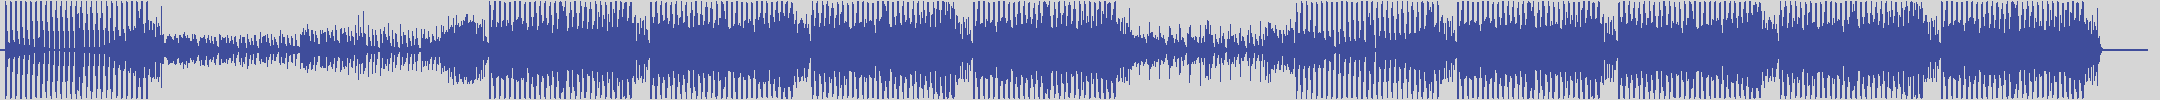 noclouds_chillout [NOC120] Santos Pasha - Gengis Khan [Dark Bass Mix] audio wave form